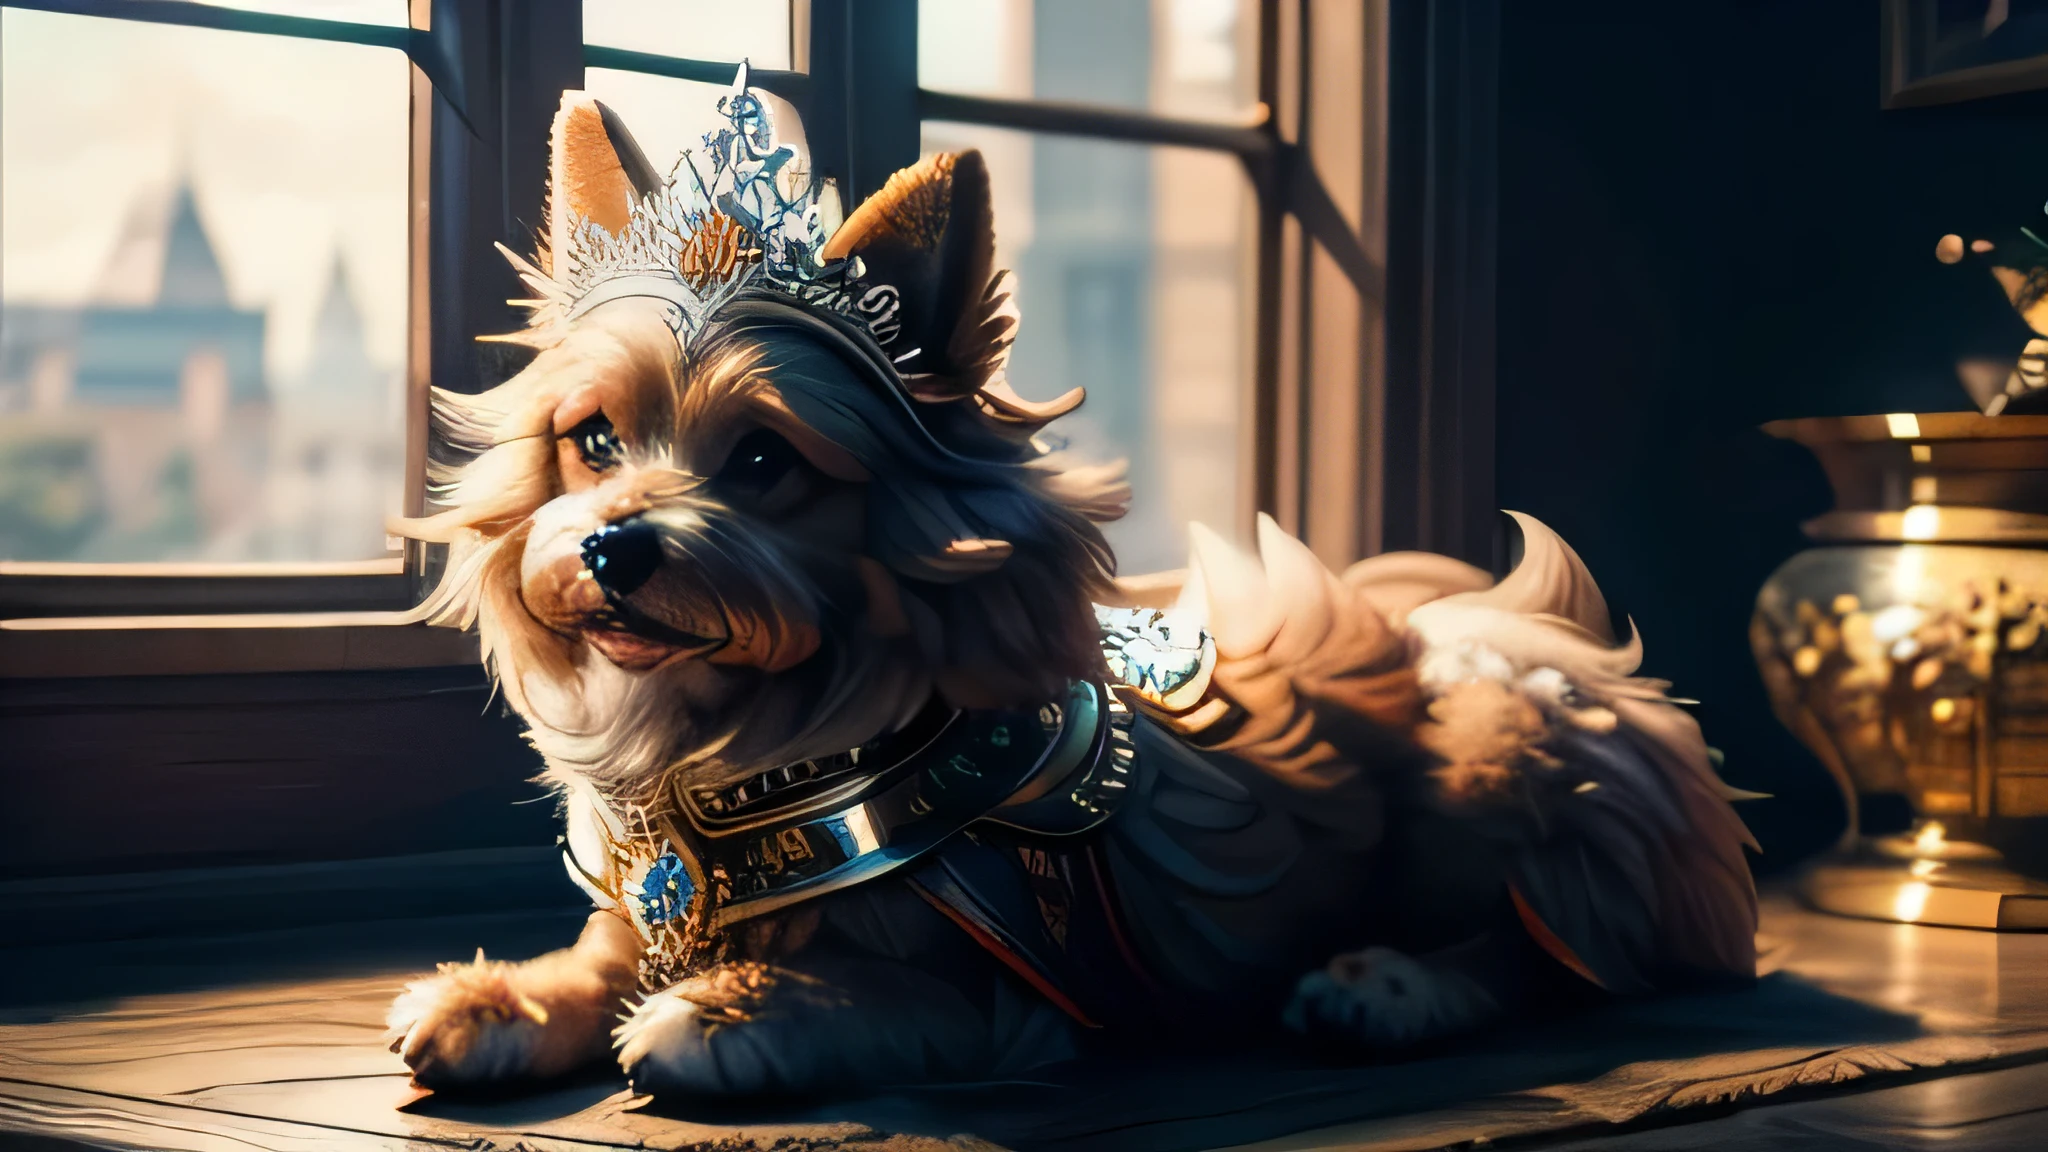 perro peludo sentado, usando una tiara divertida, Realista, alta calidad, enfoque nítido, Detalles altos,